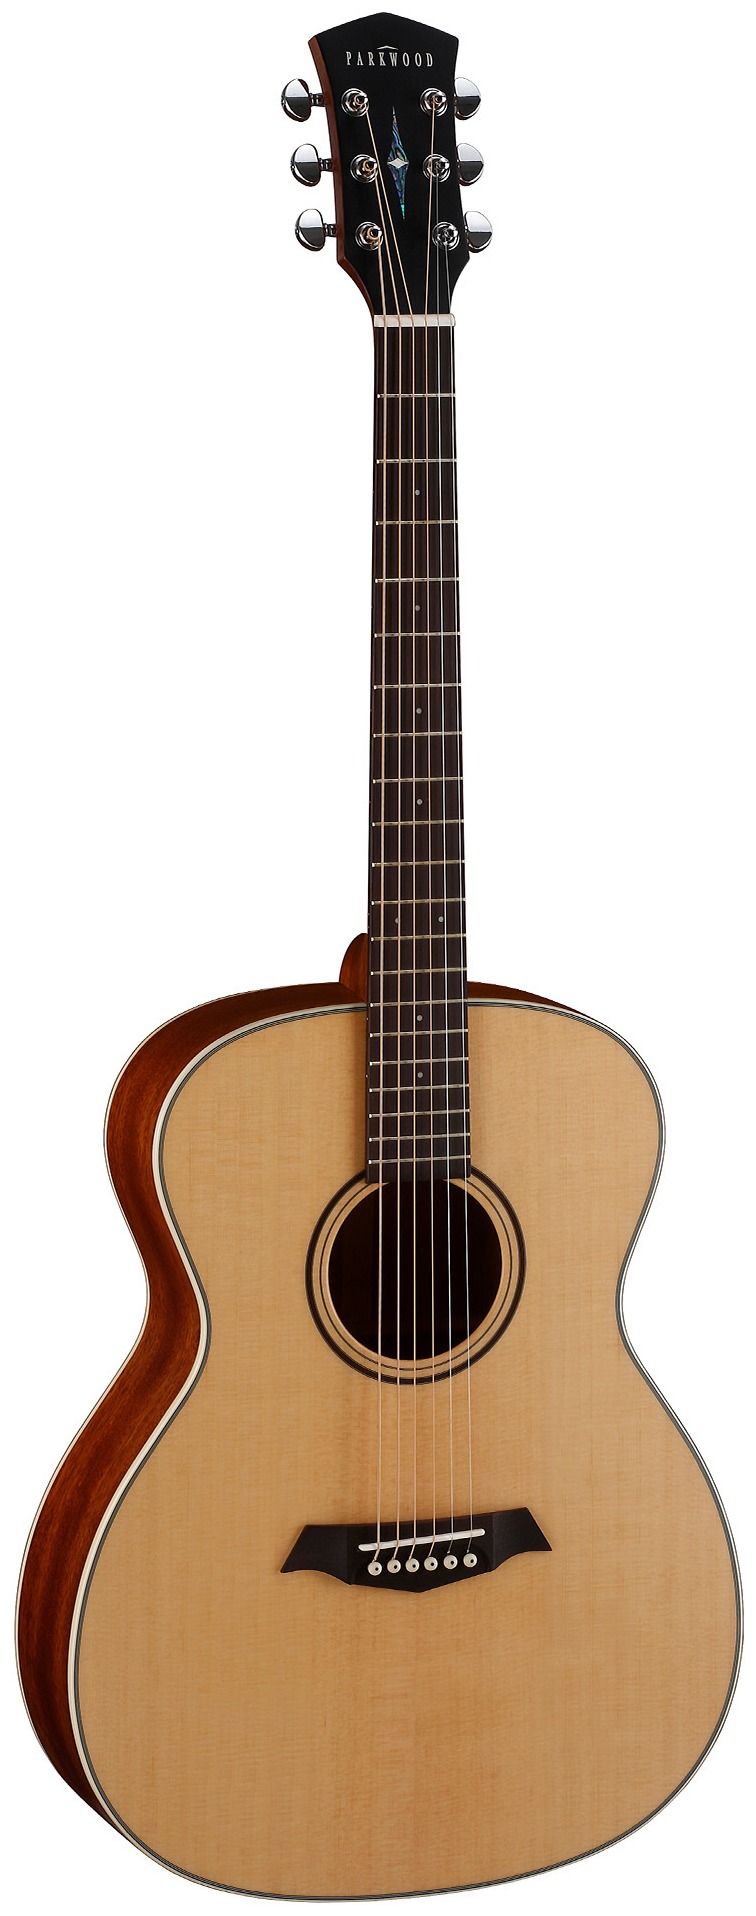 Акустические гитары Parkwood S22-GT (чехол в комплекте) электроакустические гитары parkwood s27 gt чехол в комплекте